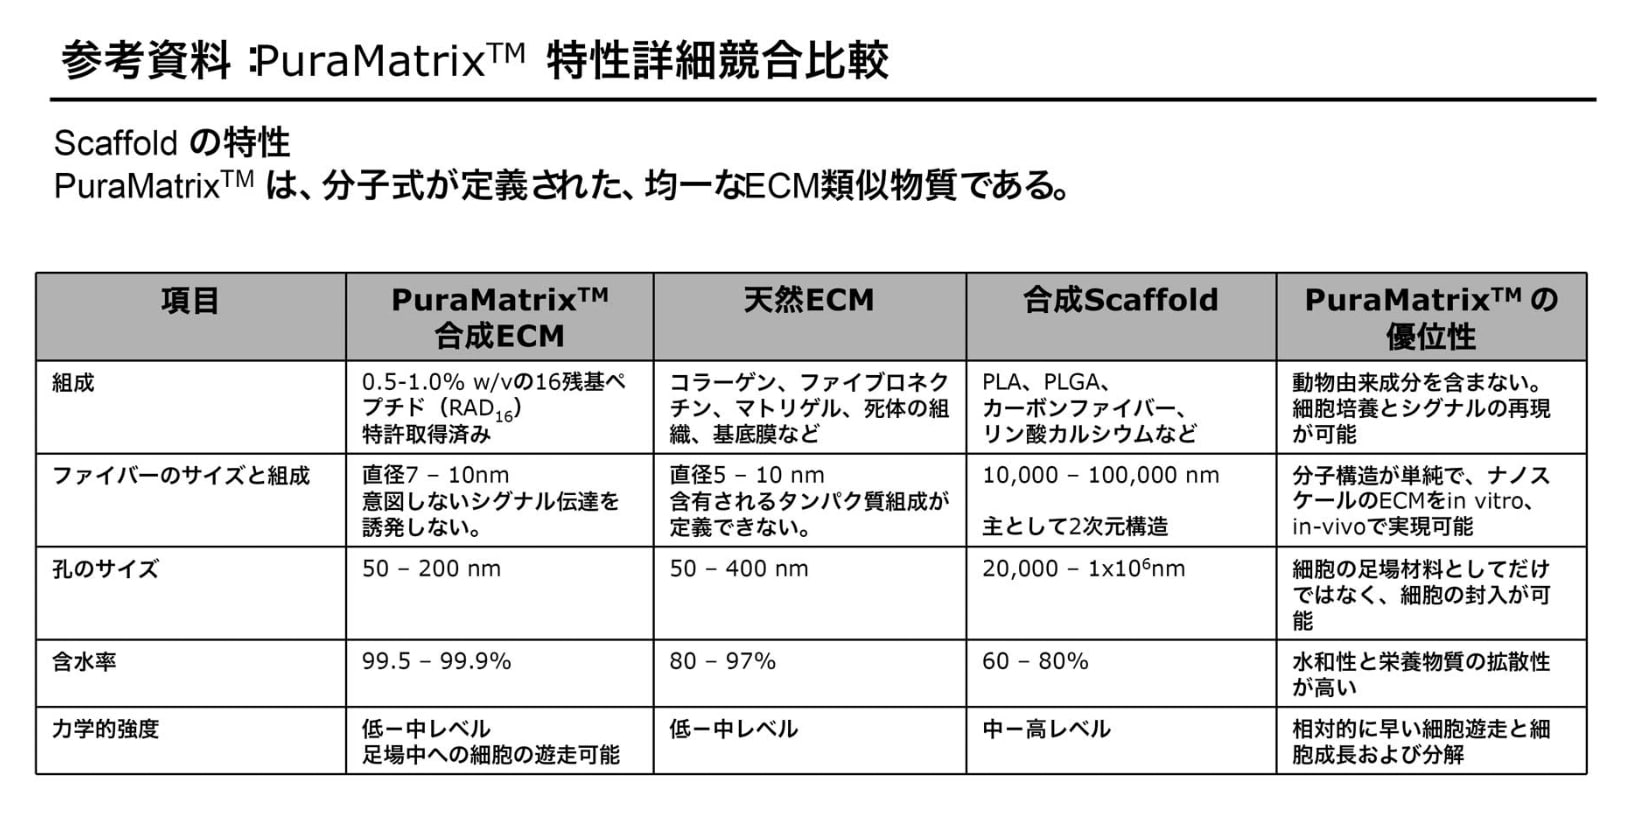 >PuraMatrix™の特性と競合製品との比較